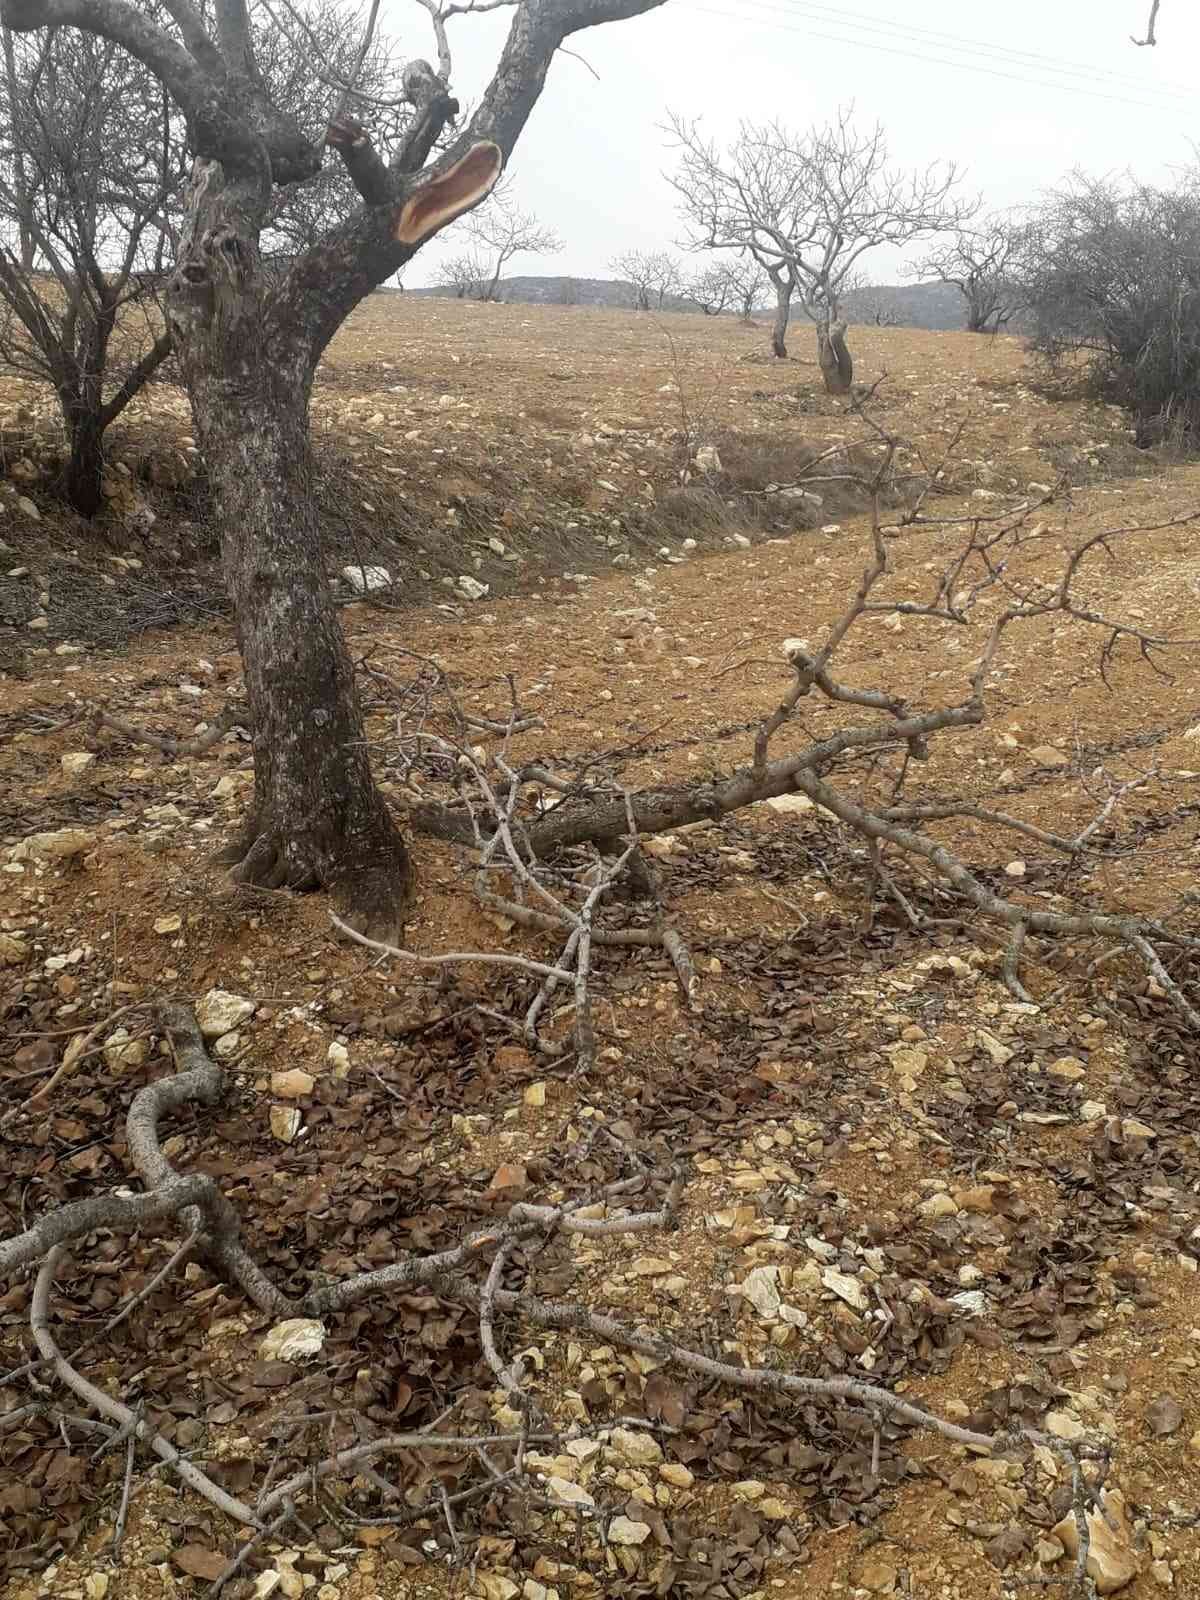 Besni’de kimliği belirsiz şahıslar fıstık ağaçlarına zarar verdi #adiyaman